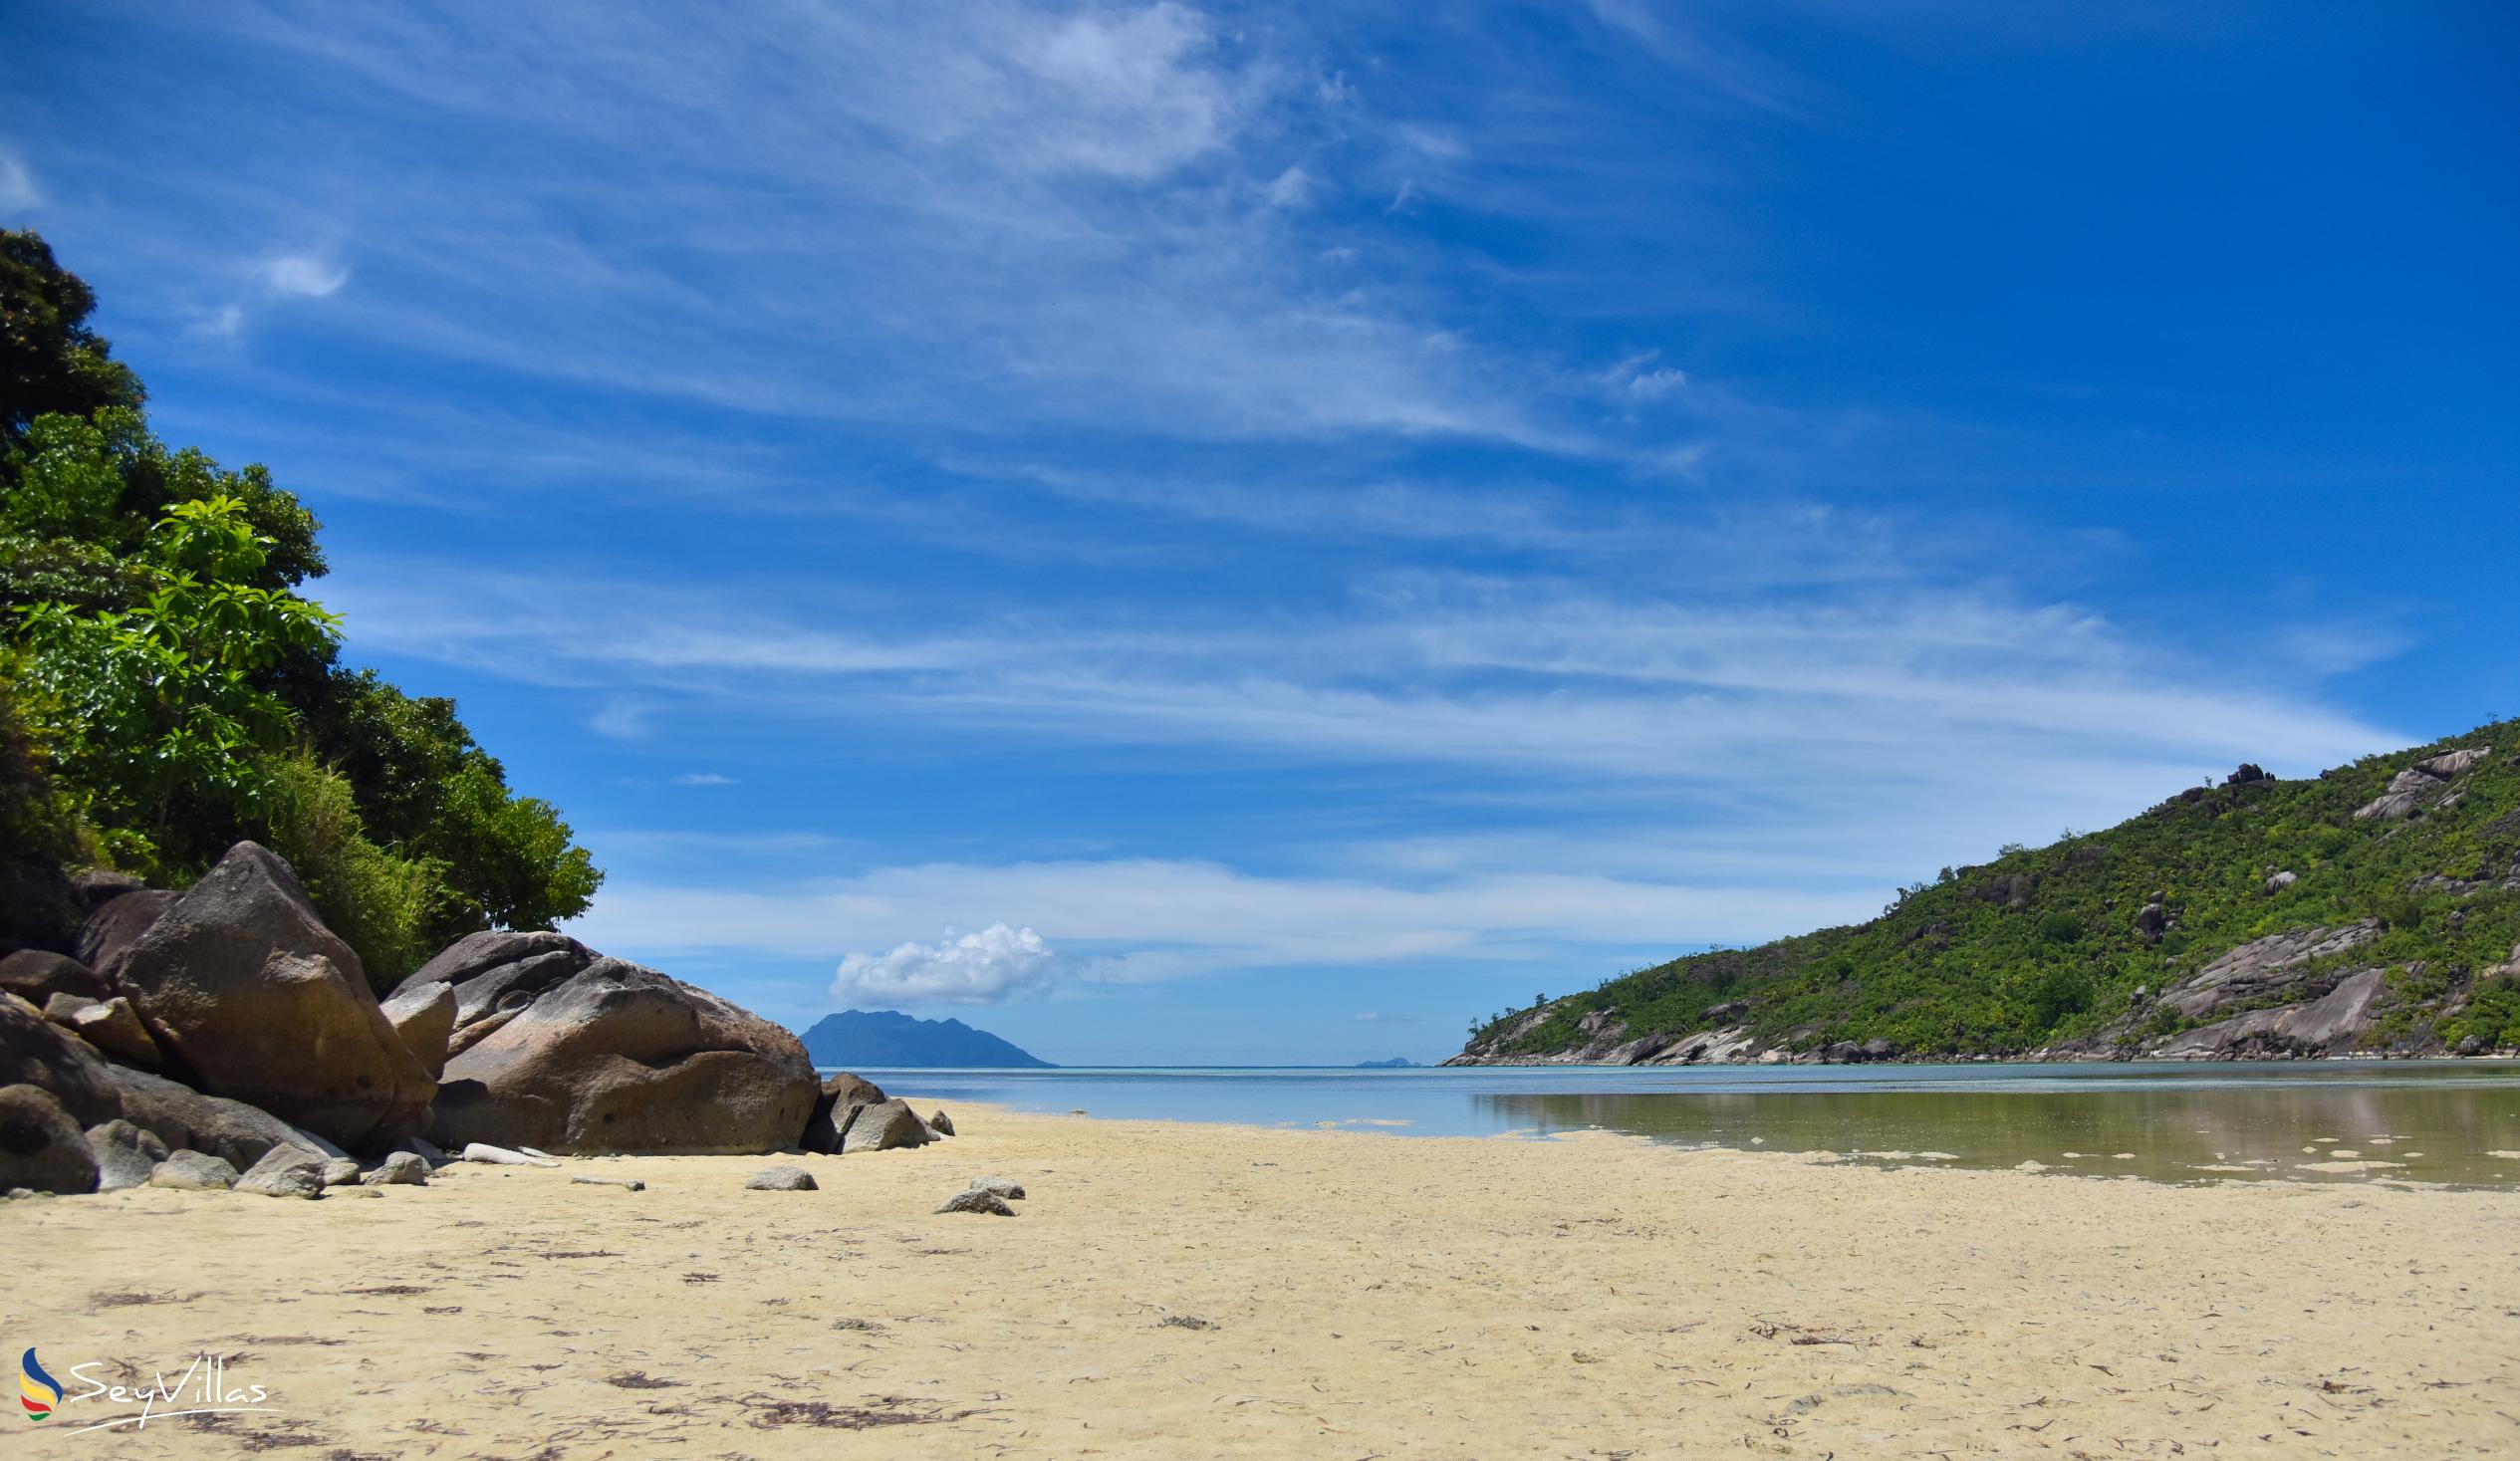 Photo 8: Baie Ternay - Mahé (Seychelles)